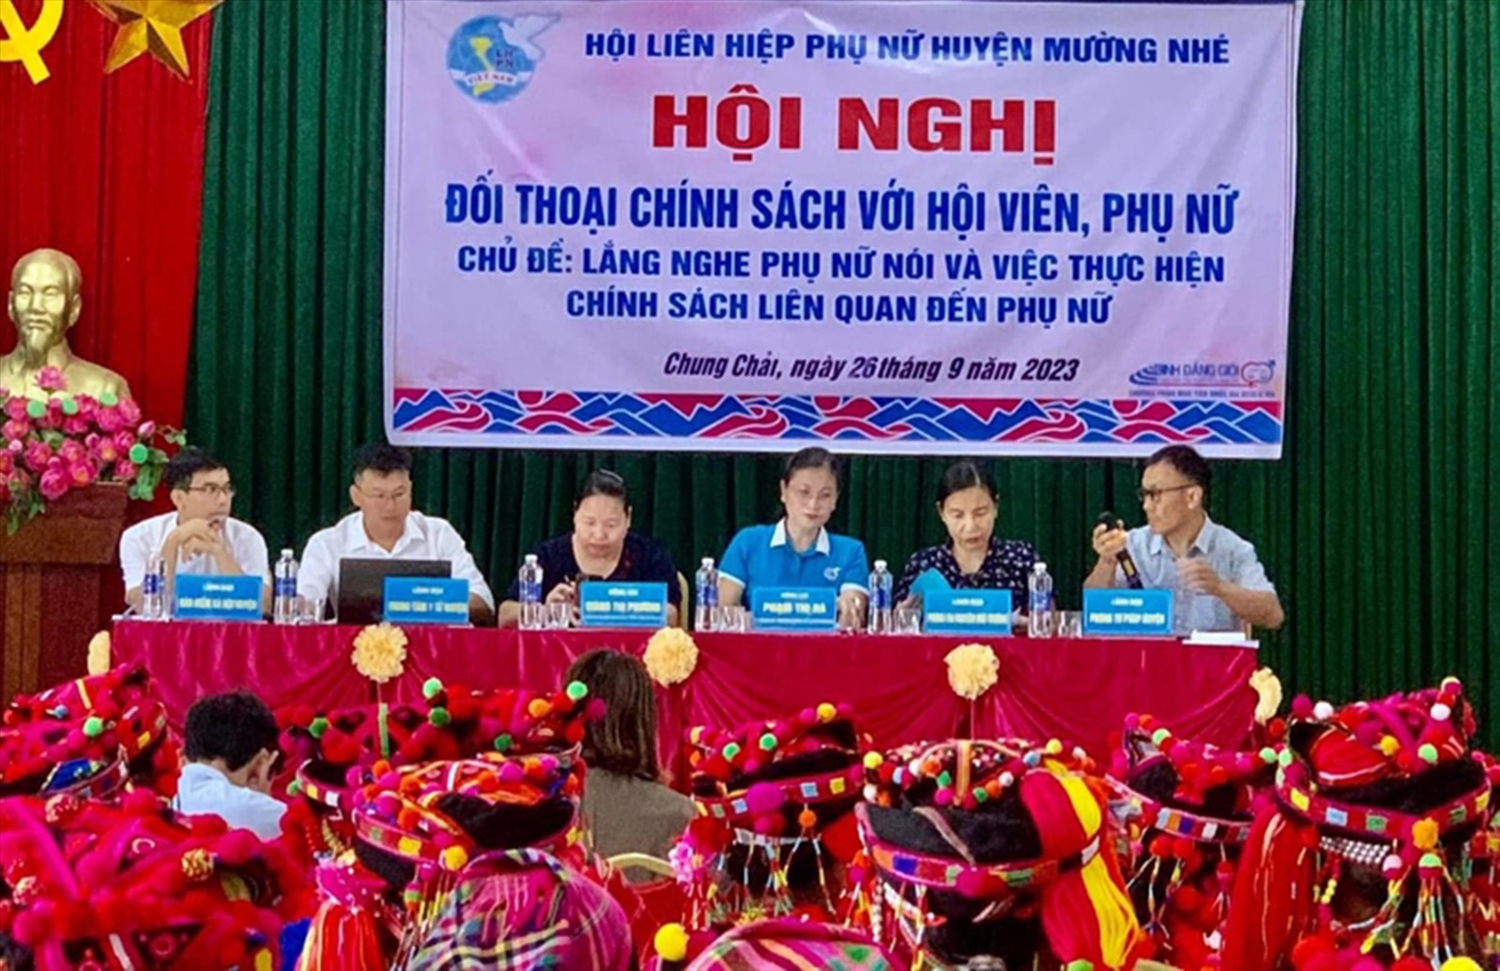 Hội nghị “Lắng nghe phụ nữ nói” do Hội LHPN huyện Mường Nhé tổ chức